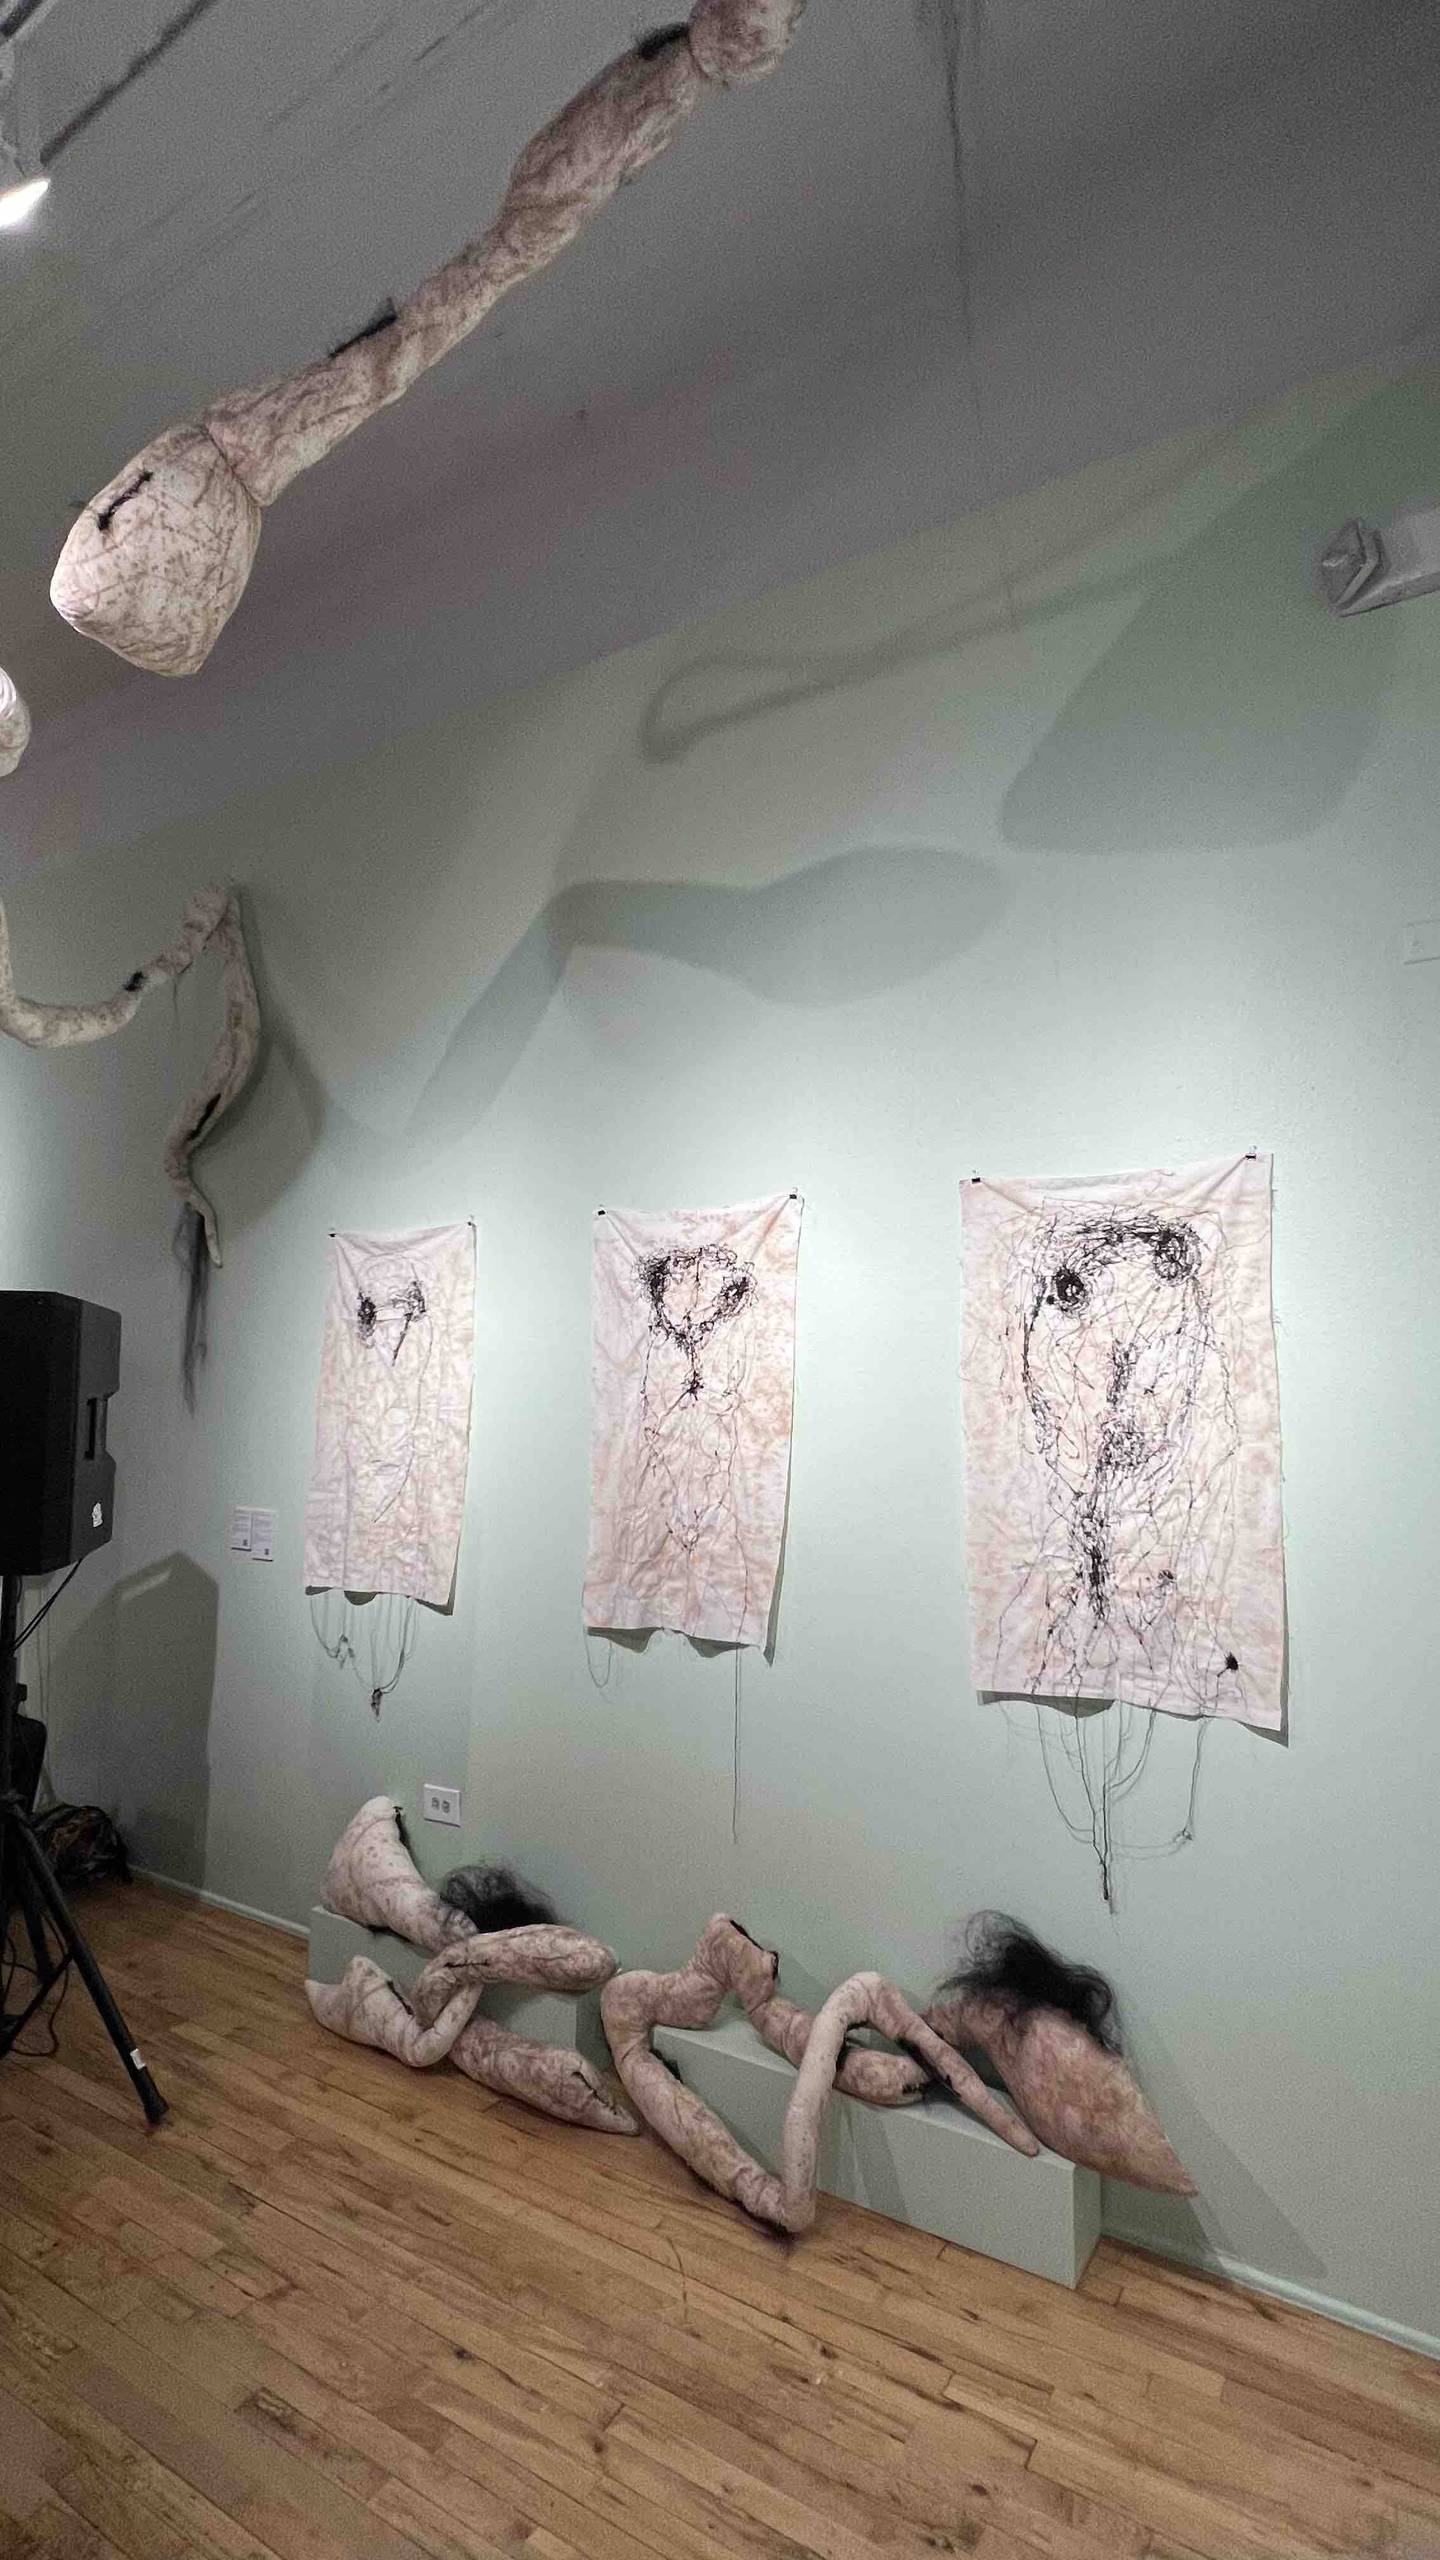 Exposición titulada “Costa Rica: Vivan siempre el trabajo y la paz”, reunirá obras de distintas técnicas como pintura, arte textil, fotografía, video, escultura y moda, entre otras.